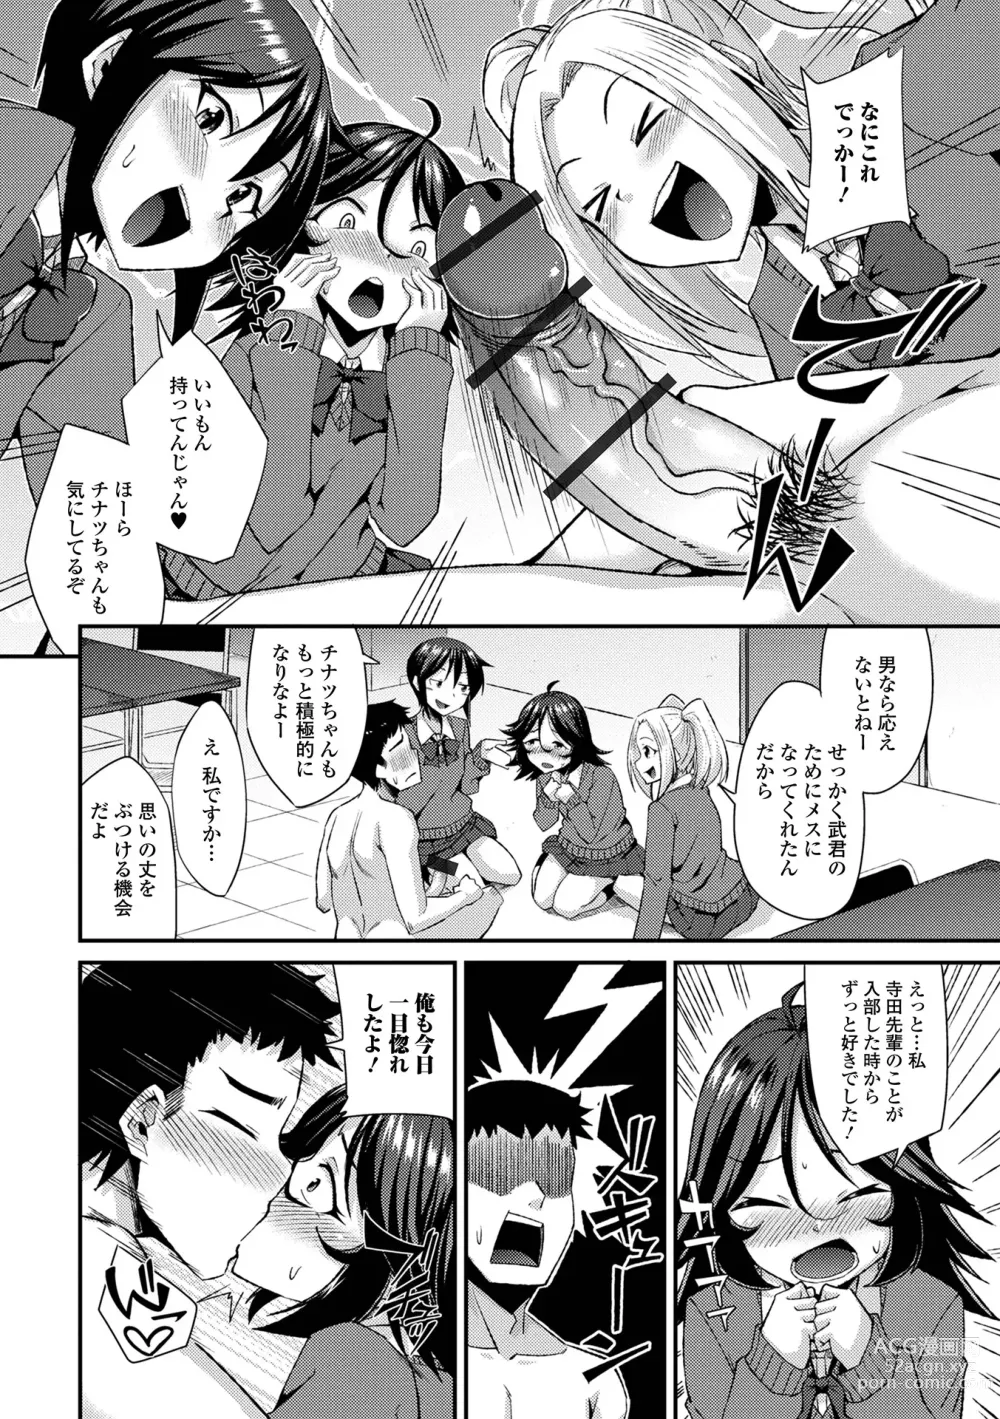 Page 10 of manga Gekkan Web Otoko no Ko-llection! S Vol. 94